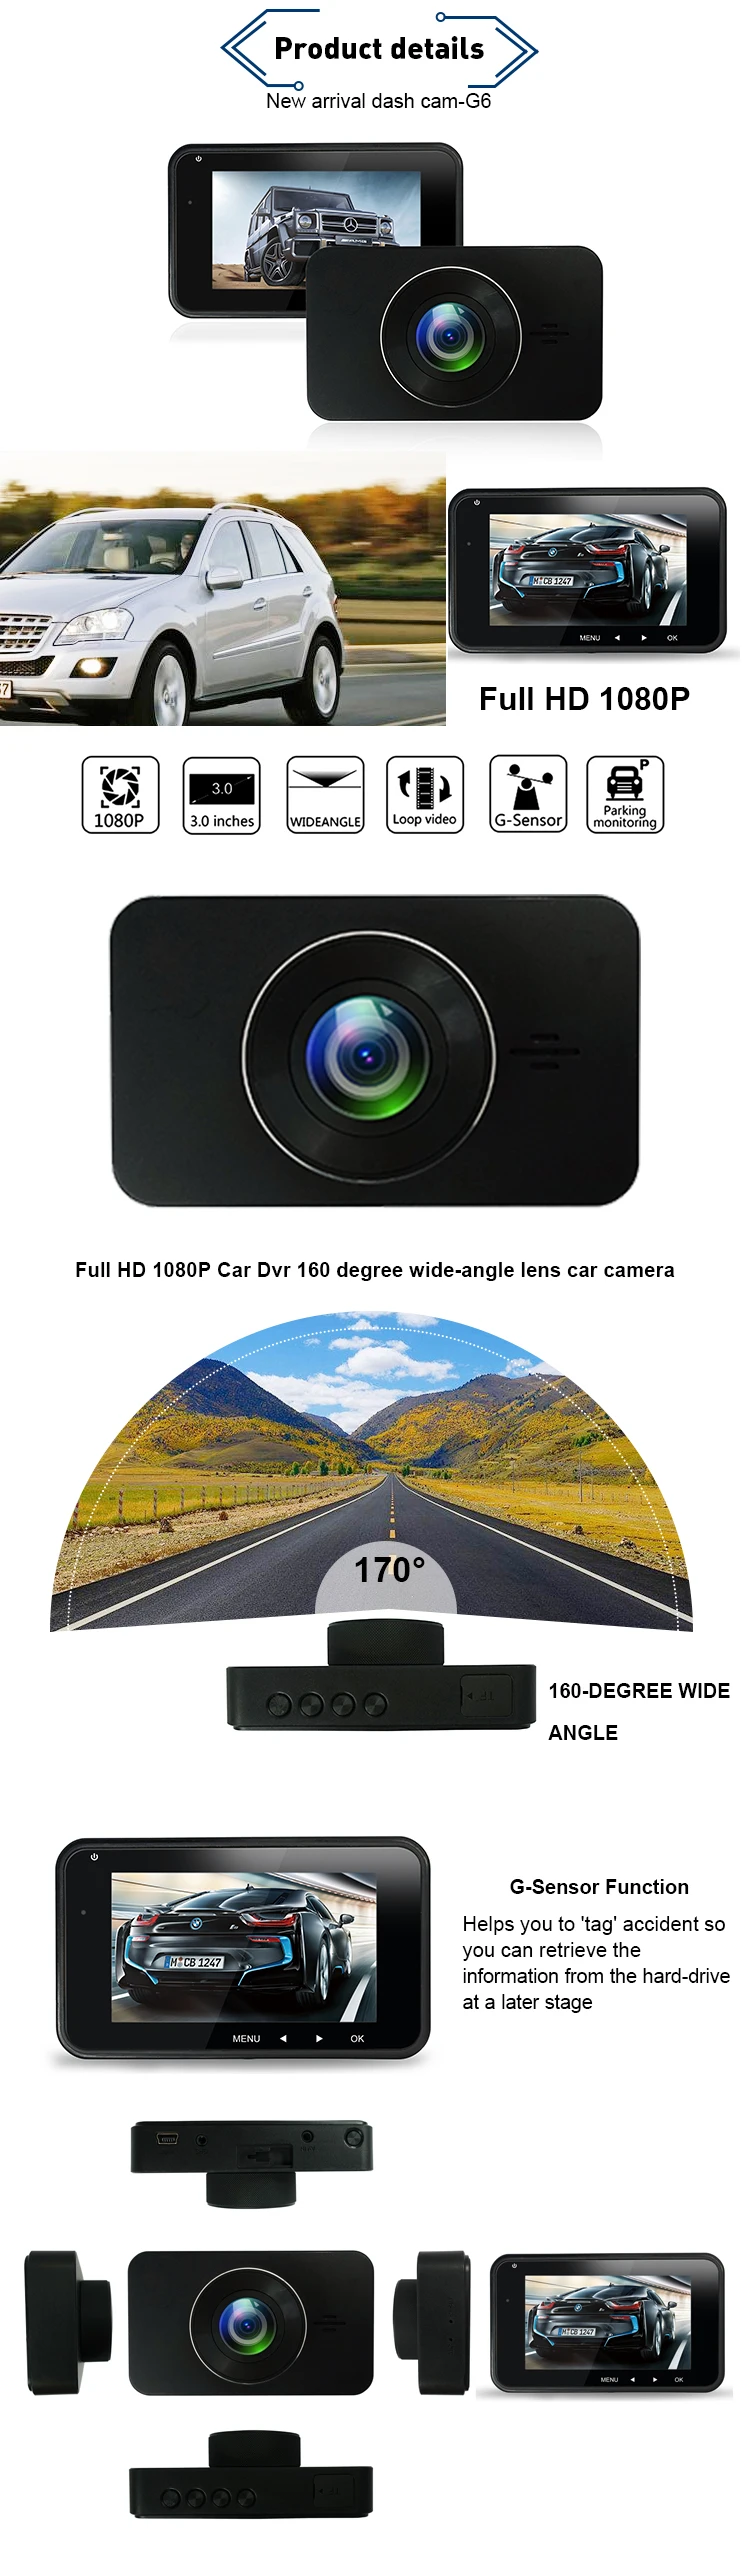 Private Model 3.0 inch M-star8328p dash cam car black box car camera